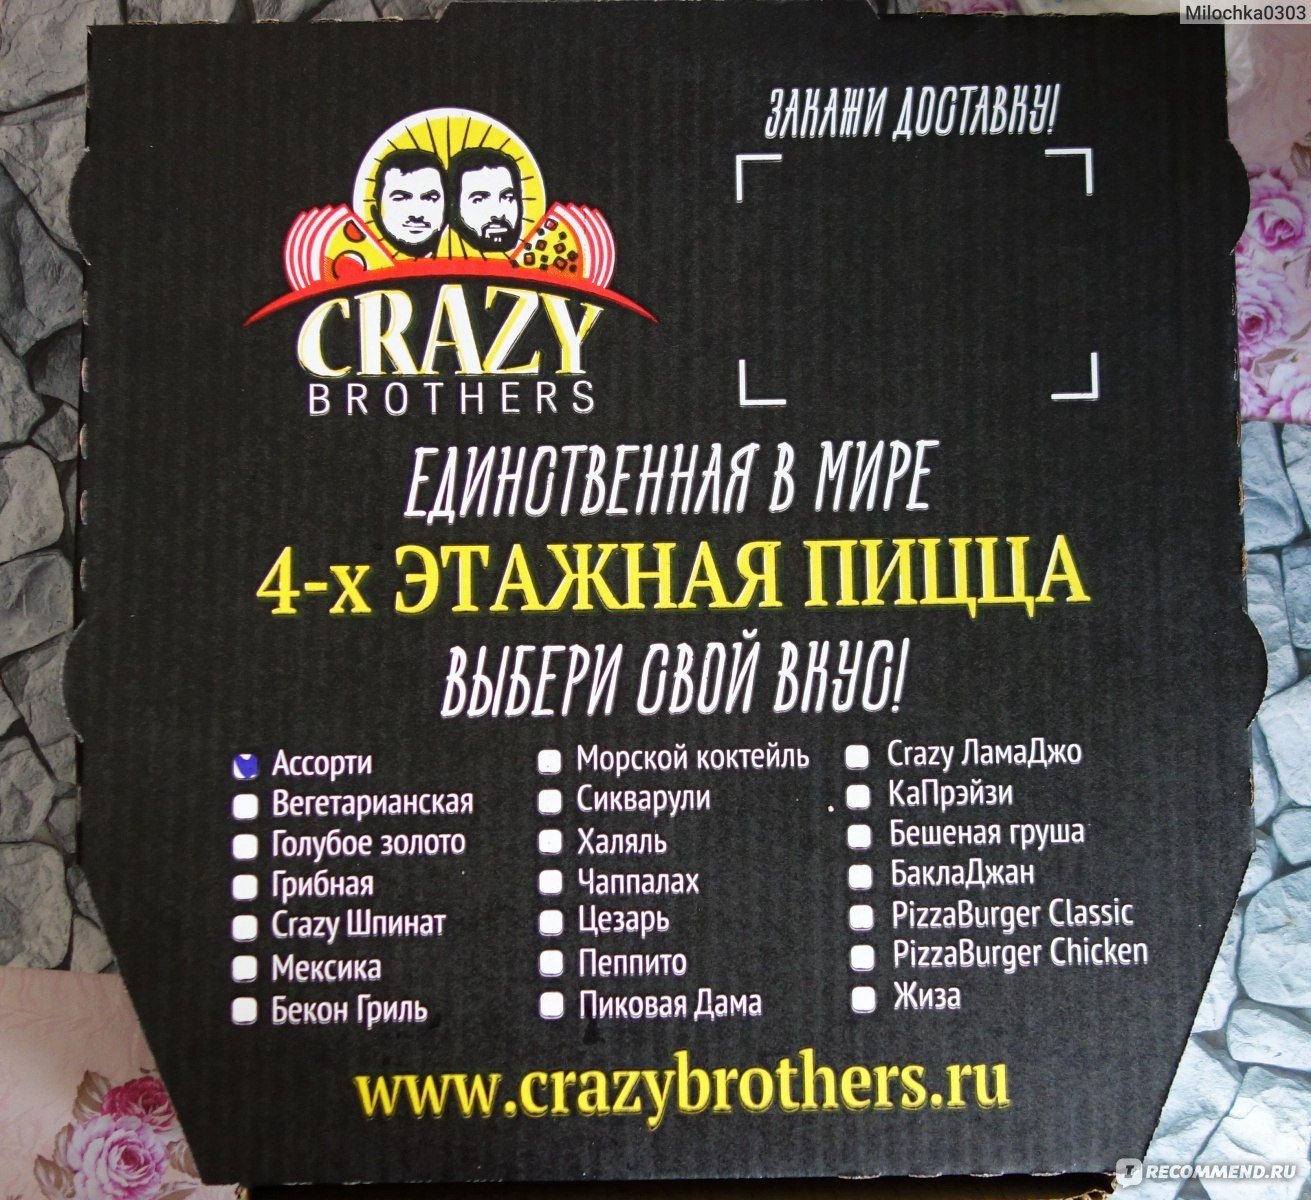 Crazy brothers. Пиццерия Crazy brothers. 4 Этажная пицца Crazy. Трехэтажная пицца. Crazy brothers меню.